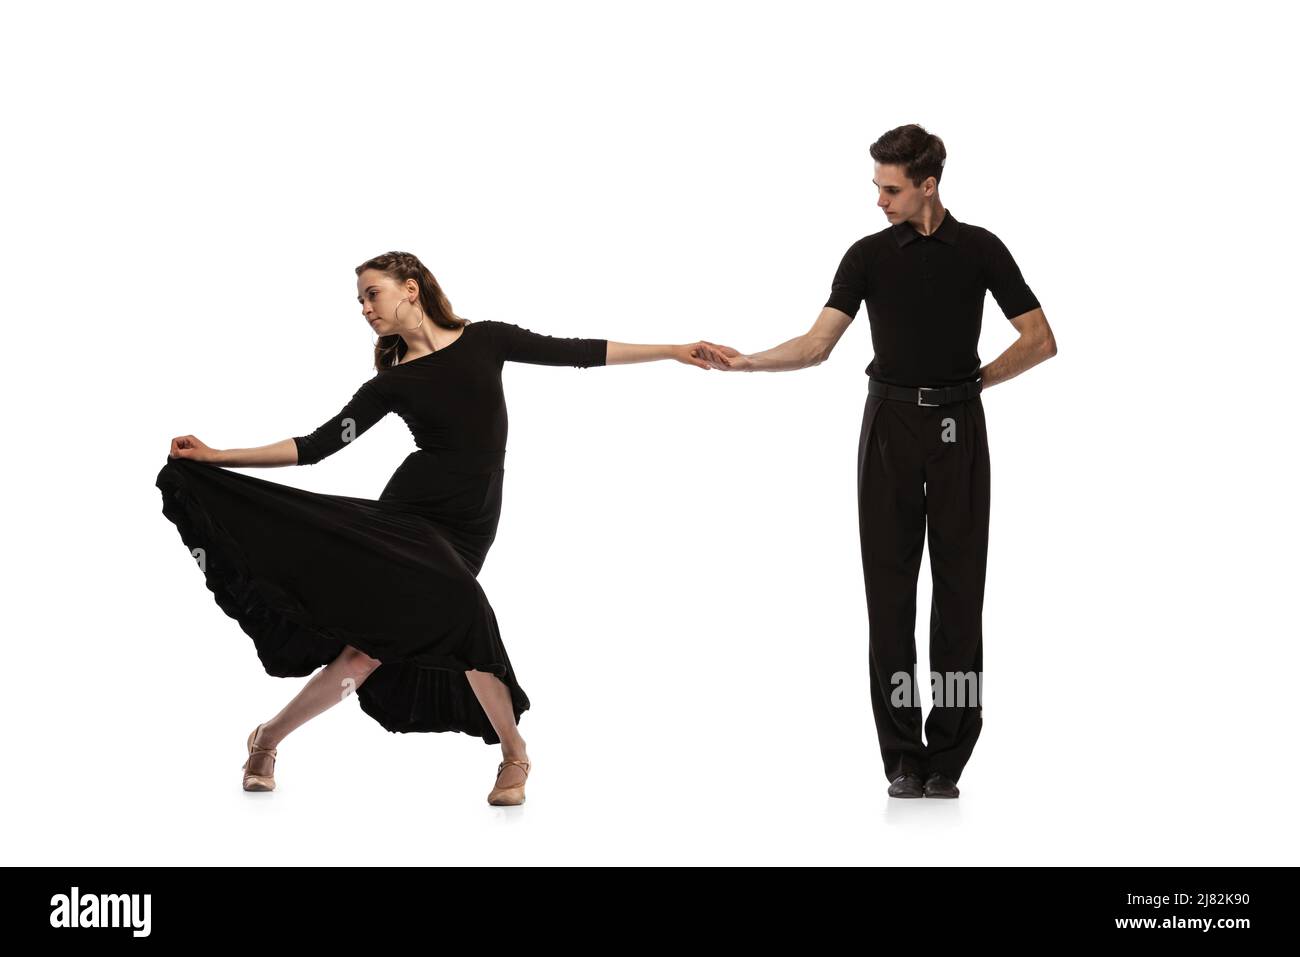 Dynamisches Porträt von jungen, gefühlvollen Tänzern in schwarzen Outfits, die auf weißem Hintergrund den Tanz im Ballsaal tanzen. Konzept von Kunst, Schönheit, Musik, Stil. Stockfoto